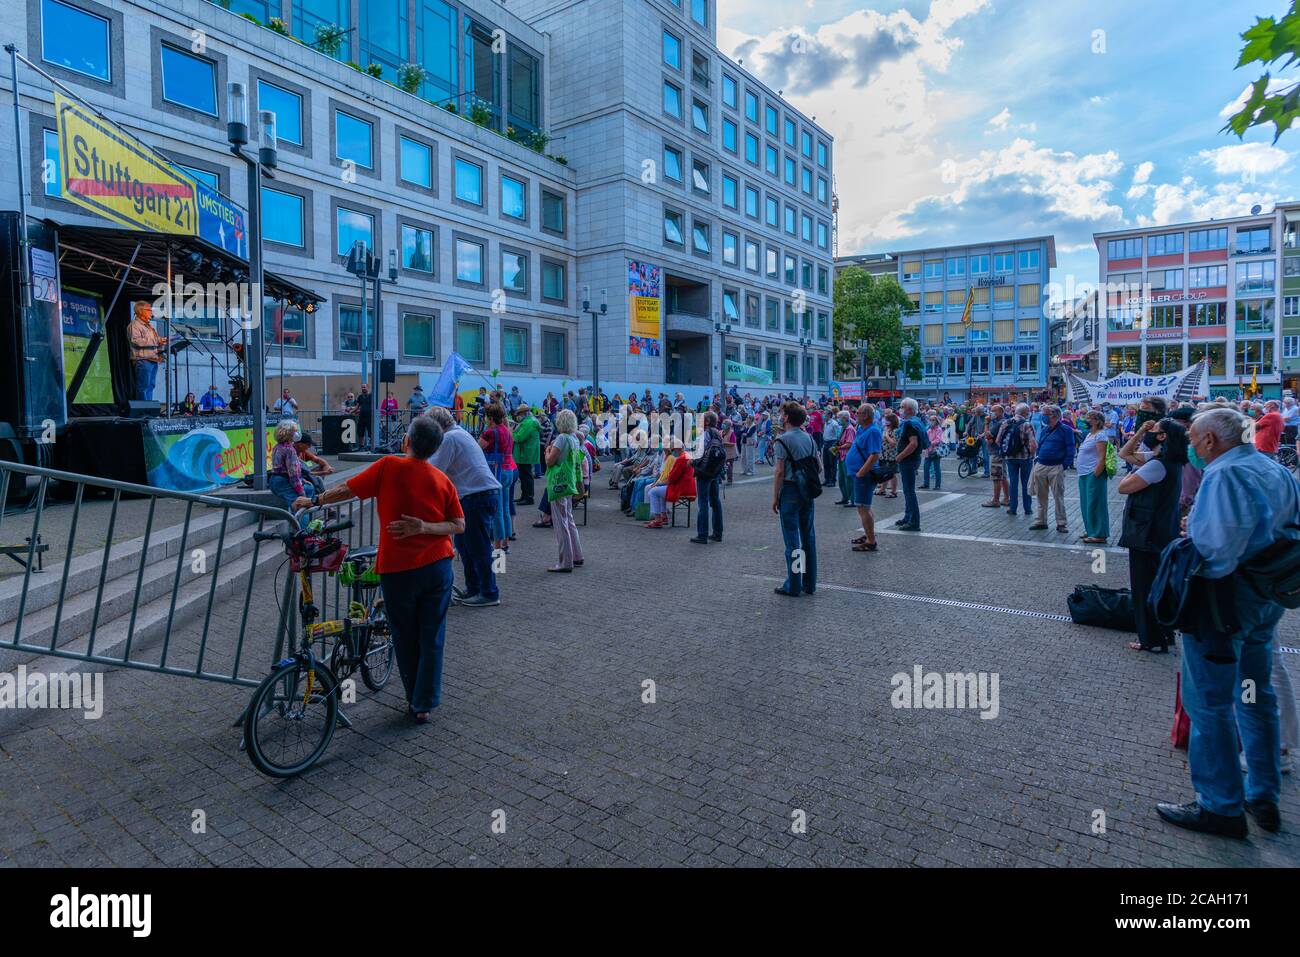 Manifestación contra Stuttgart 21, 2020 de julio, Marktplatz o Plaza del mercado en el centro de la ciudad, Stuttgart, Baden-Württemberg, Alemania, Europa Central Foto de stock